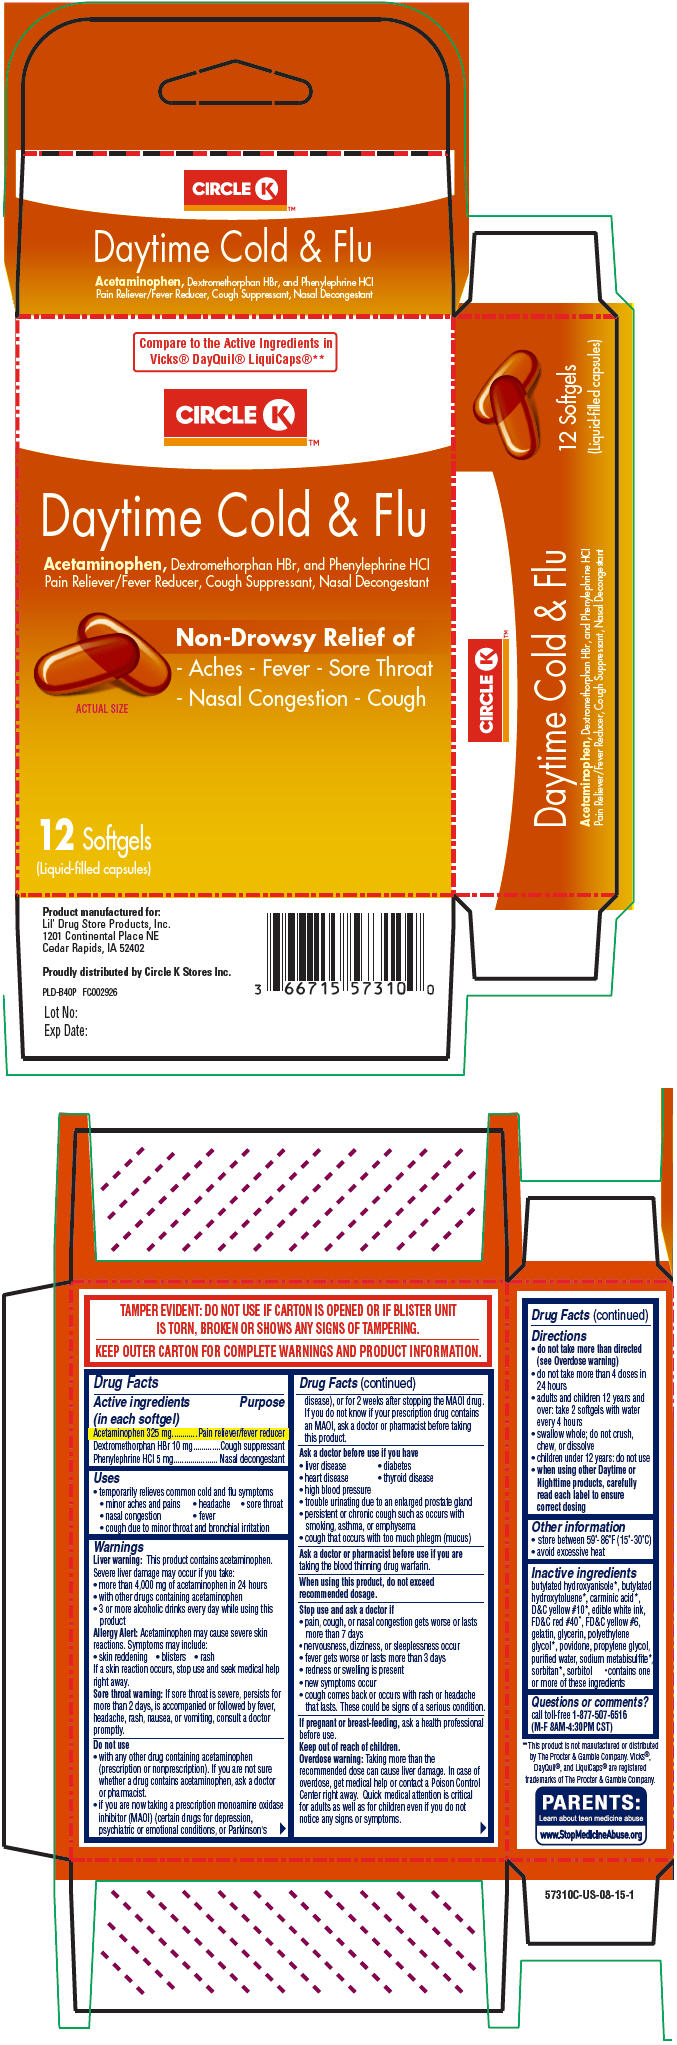 Principal Display Panel - 12 Capsule Blister Pack Carton - 5769